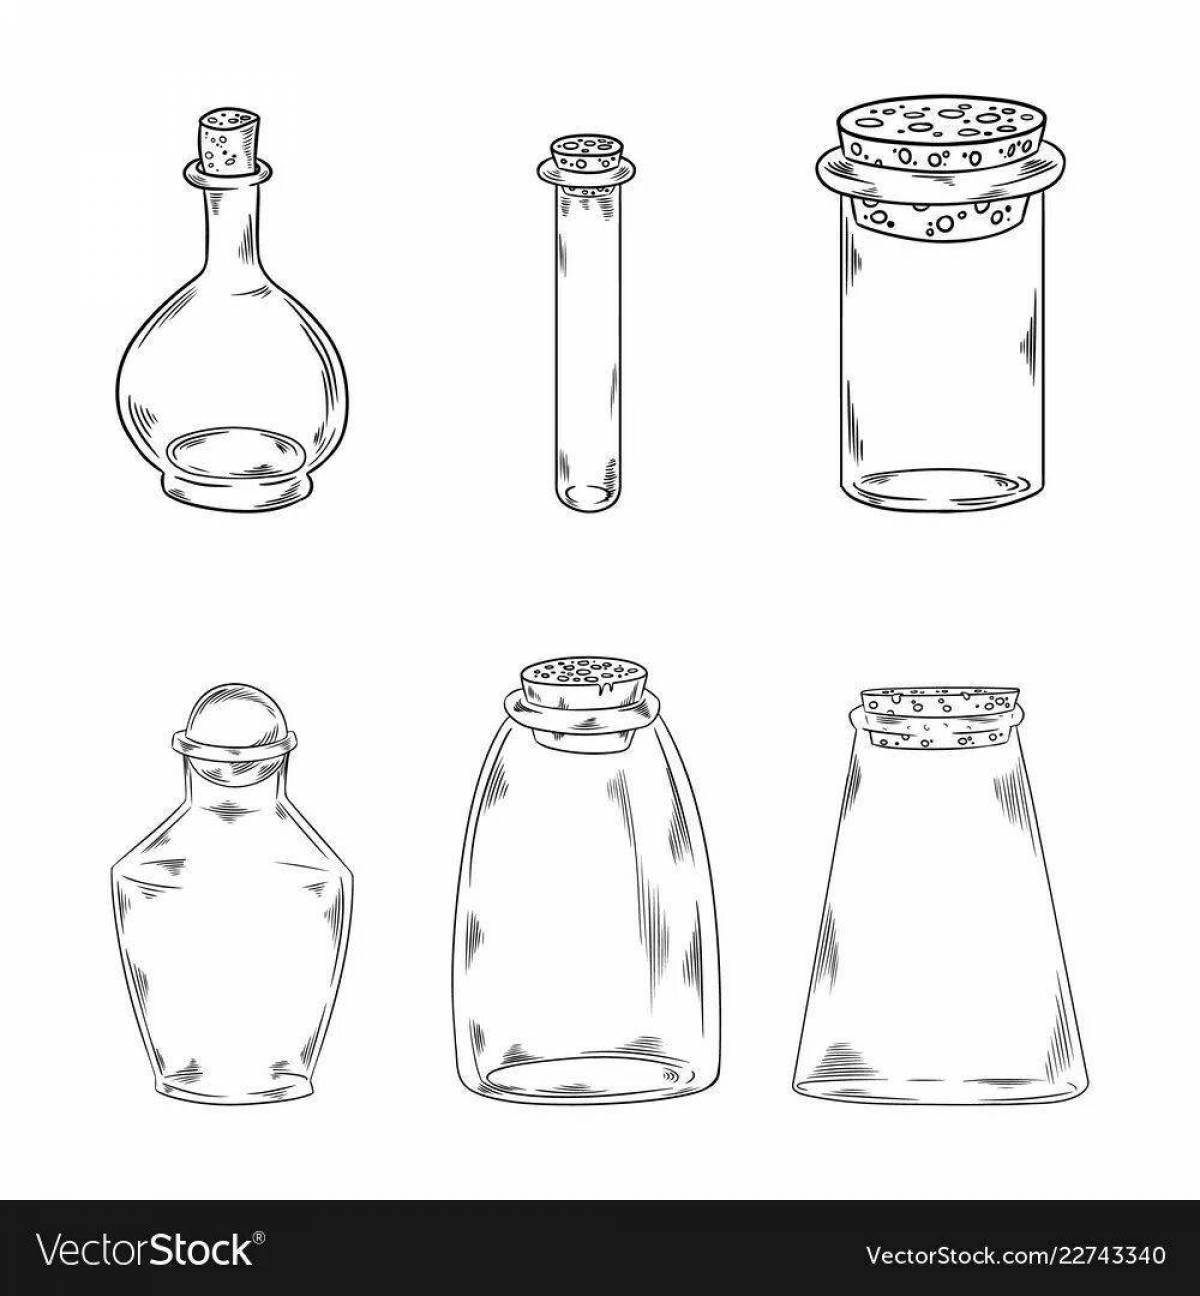 Potion in a bottle #4